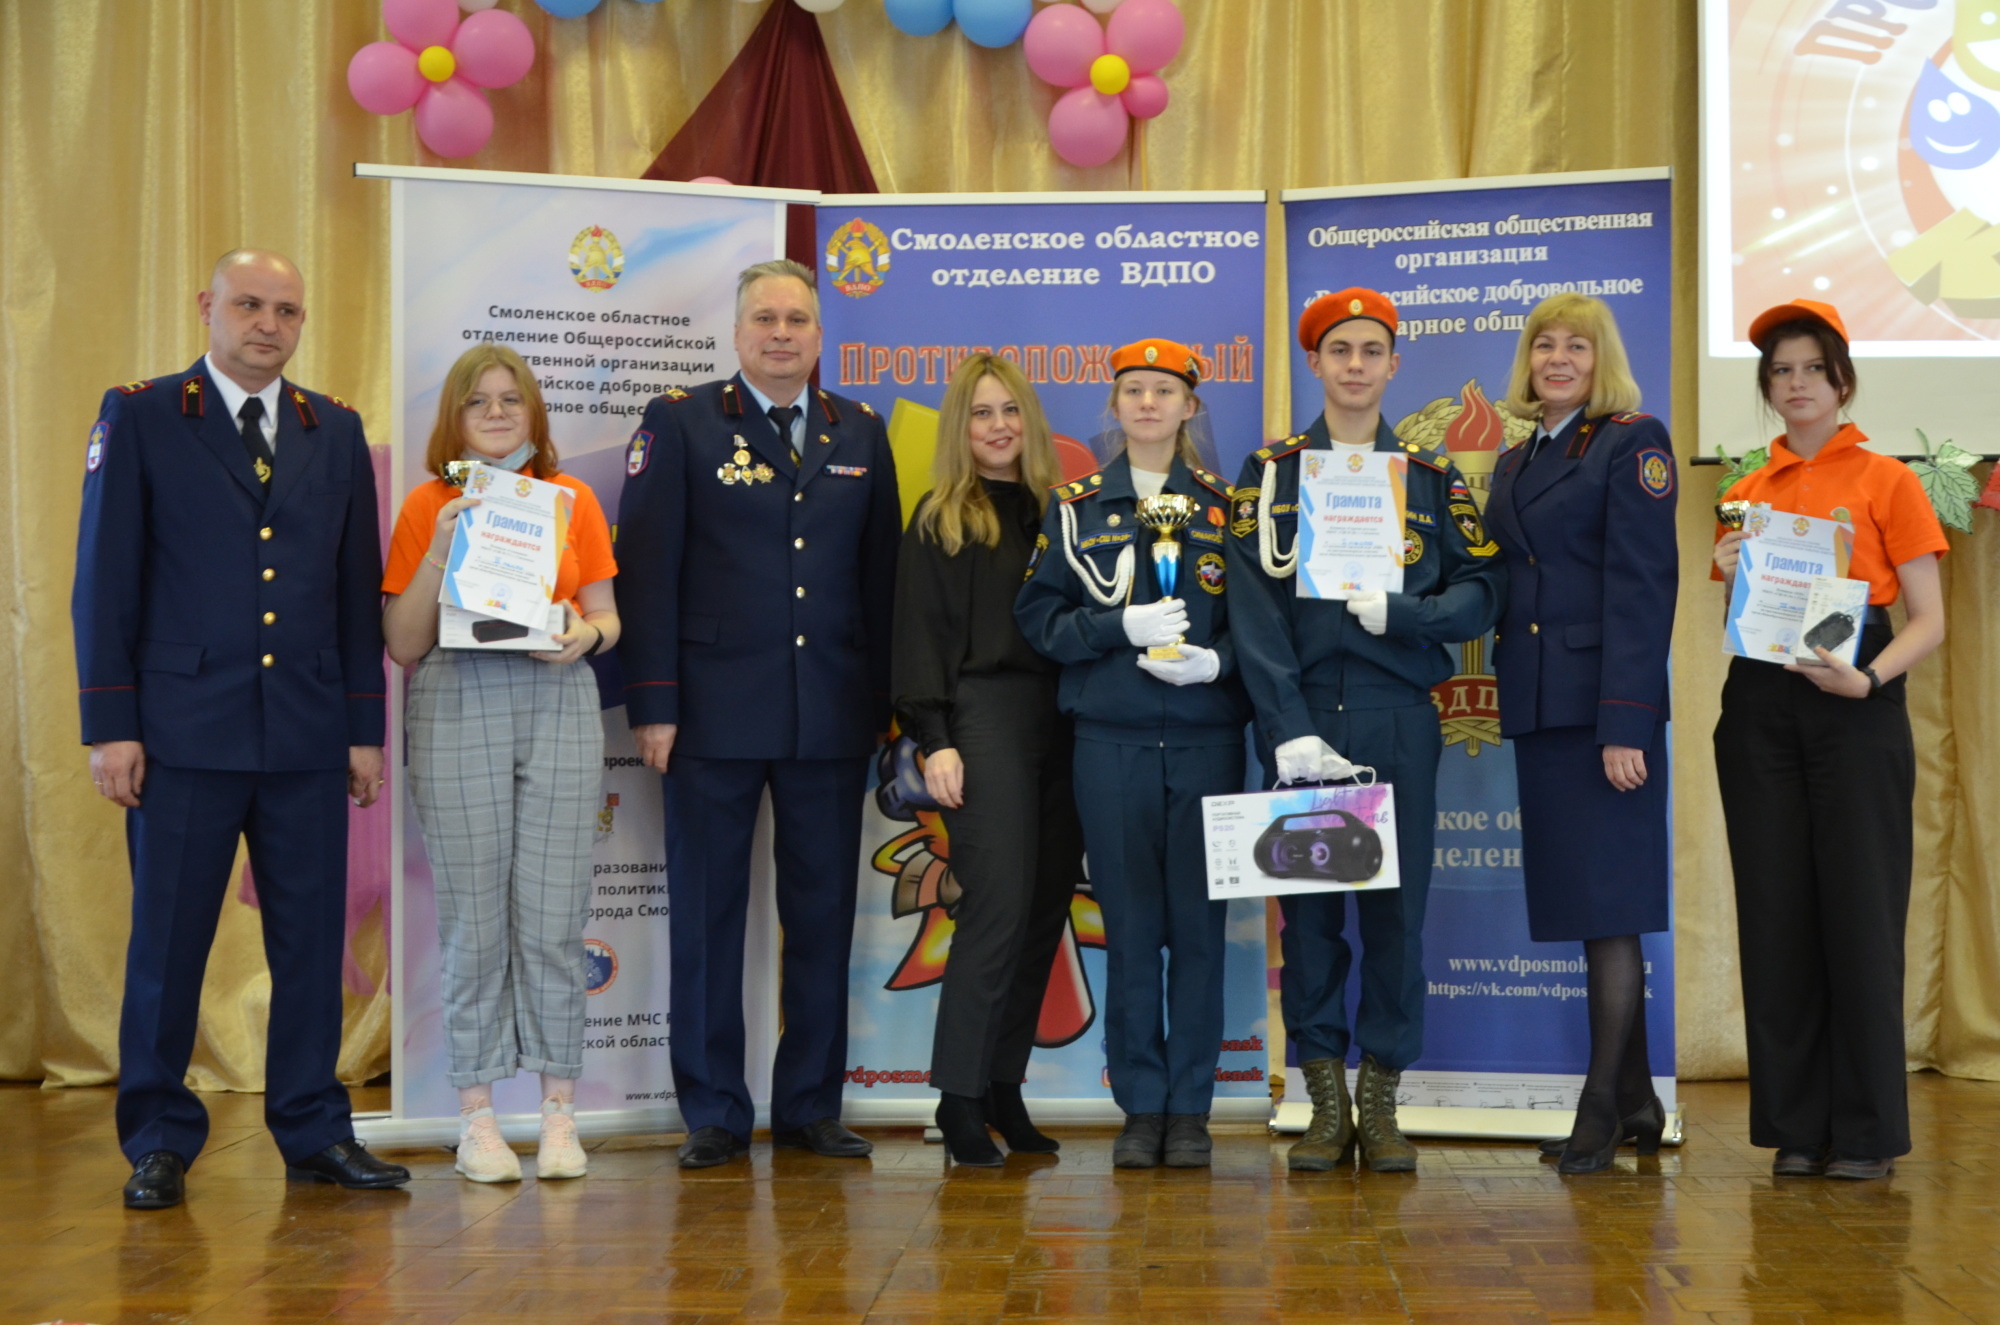 Дружина юных пожарных «Огоньки» победила в «Противопожарном КВН» в Смоленске